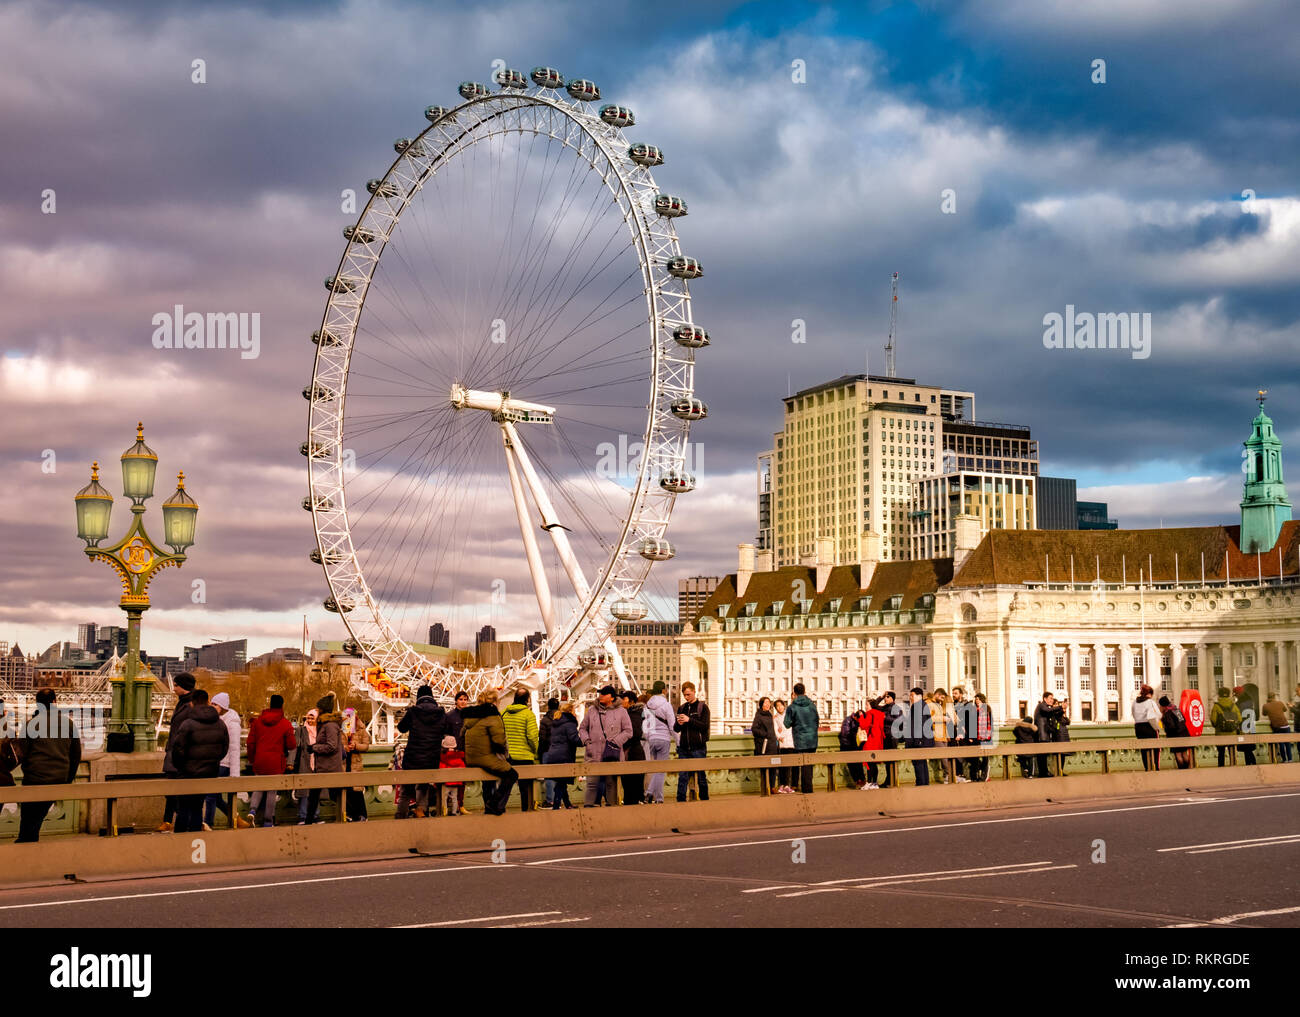 Londres, Reino Unido - 10 de enero de 2019: Los turistas que visitan Londres en frente del famoso ojo whell, entre el río Támesis iluminado por la luz del atardecer Foto de stock